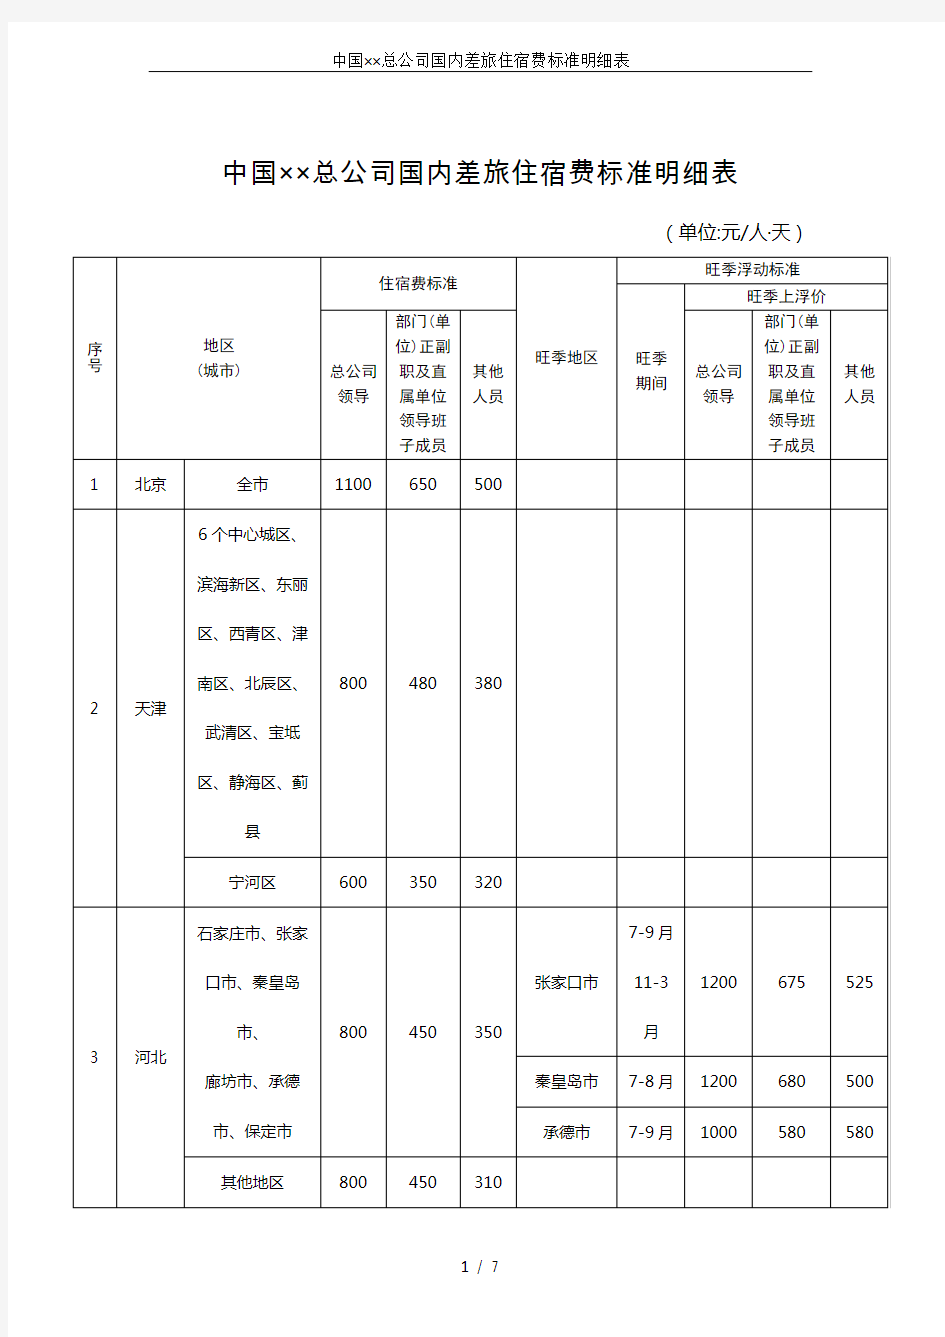 中国××总公司国内差旅住宿费标准明细表